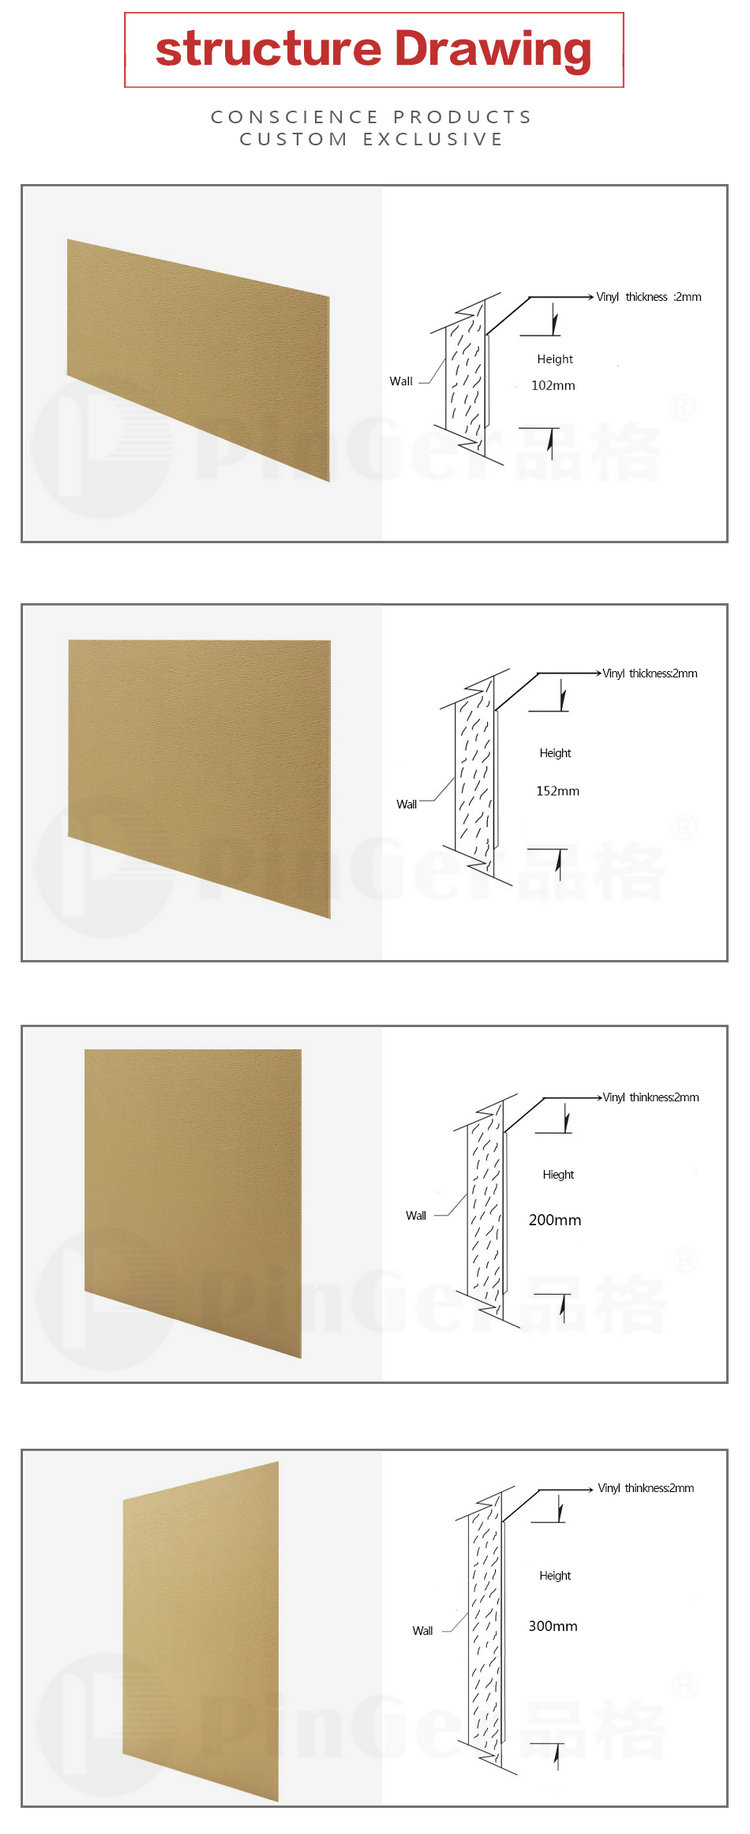 Tablero de pared de vinilo protector de pared de puerta